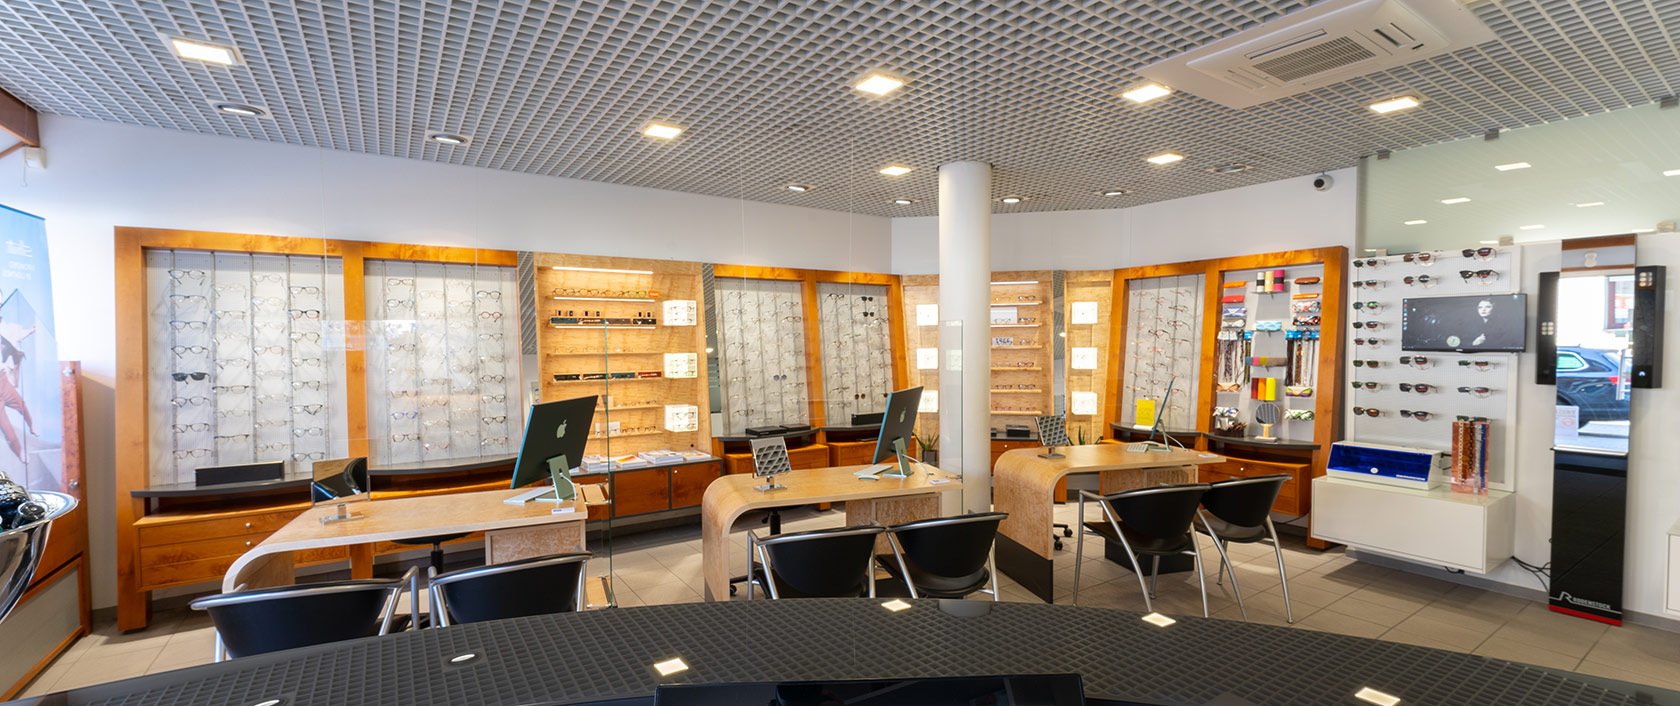 Optik Baumann - Brillen und Contactlinsen, Düsseldorfer Str. 87 - 89 in Mülheim